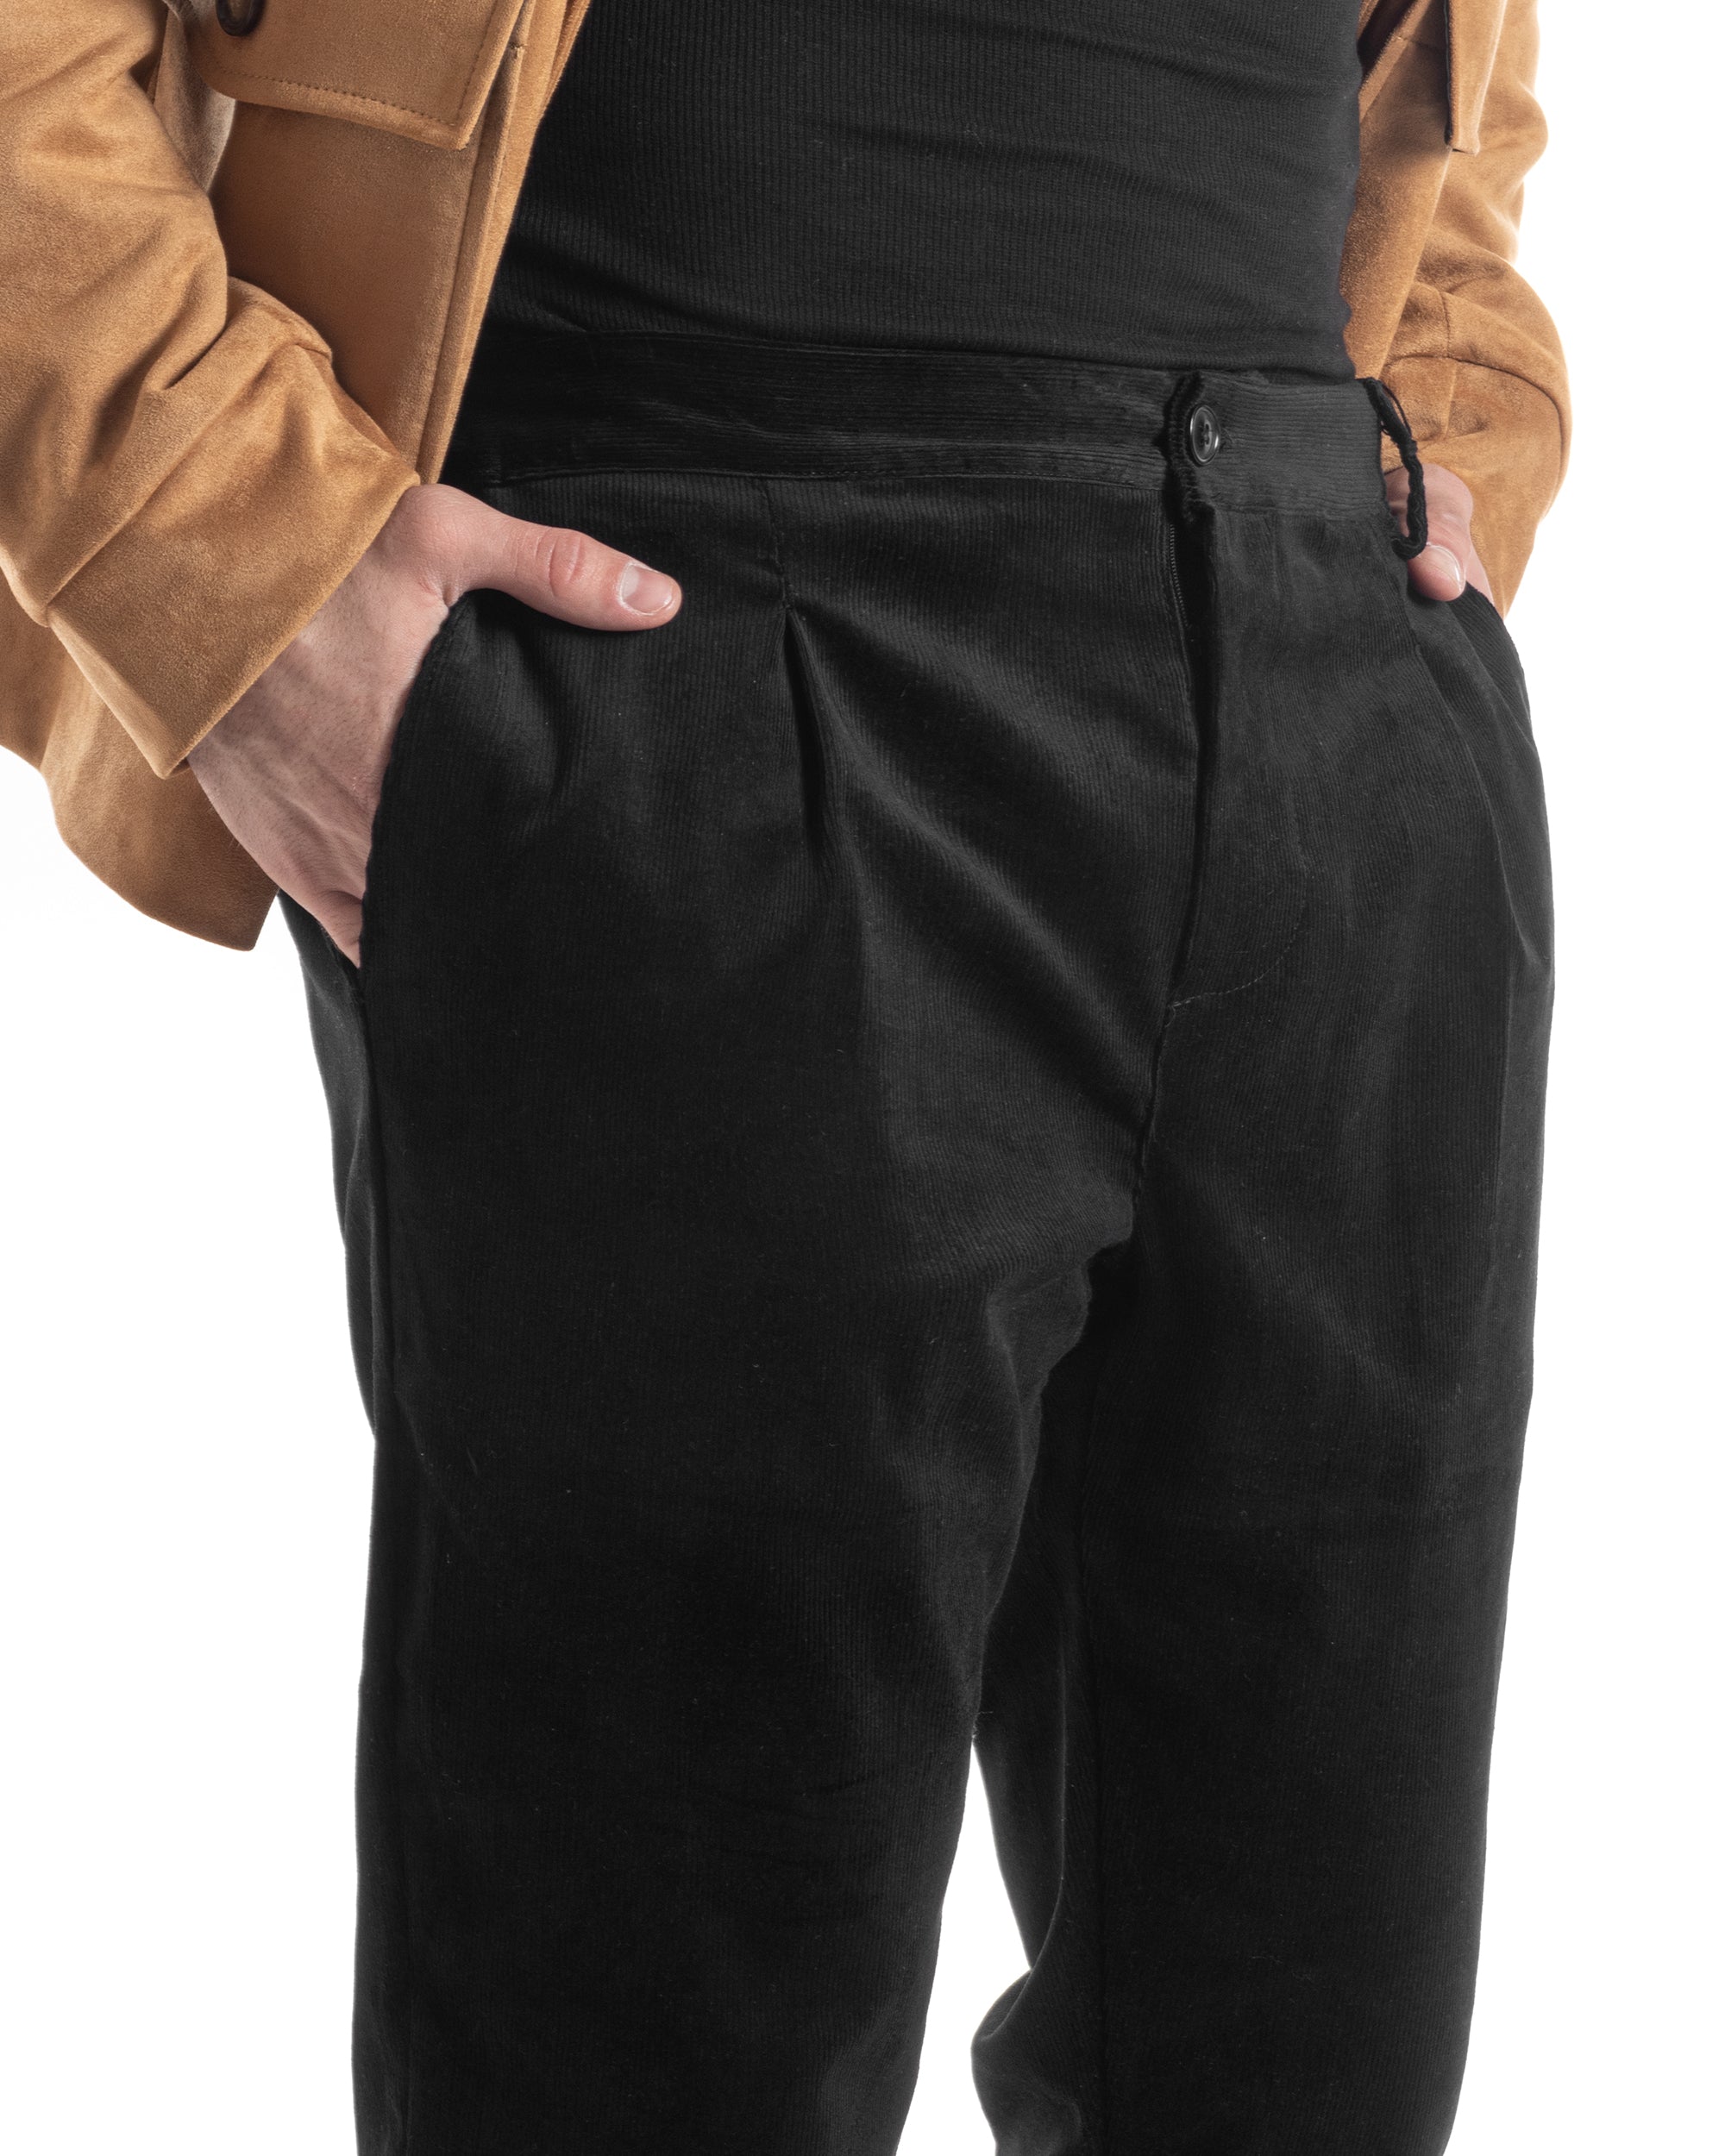 Pantaloni Uomo Tasca America Con Pinces Classico Velluto Costine Nero Casual GIOSAL-P6032A